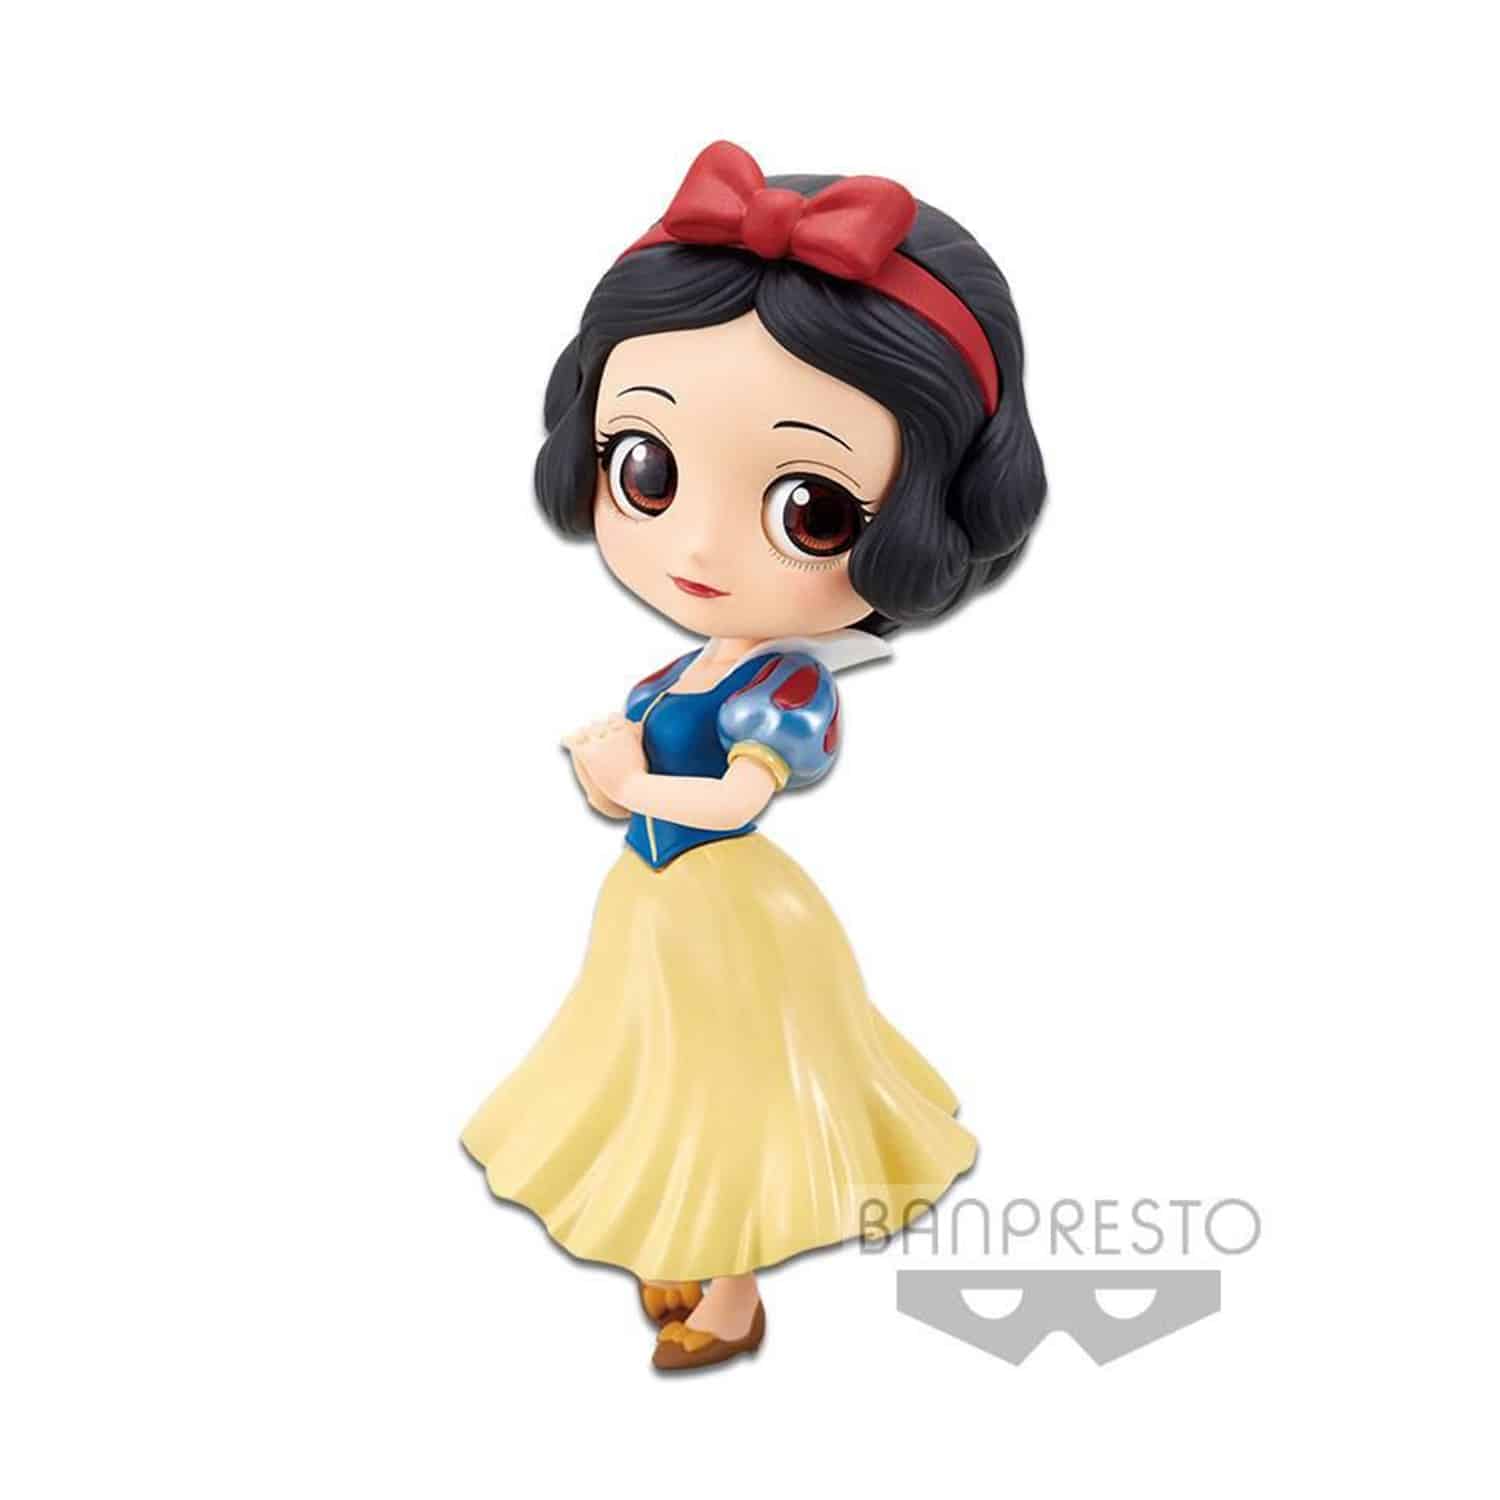 Snow White - Snow White Q Posket Figure